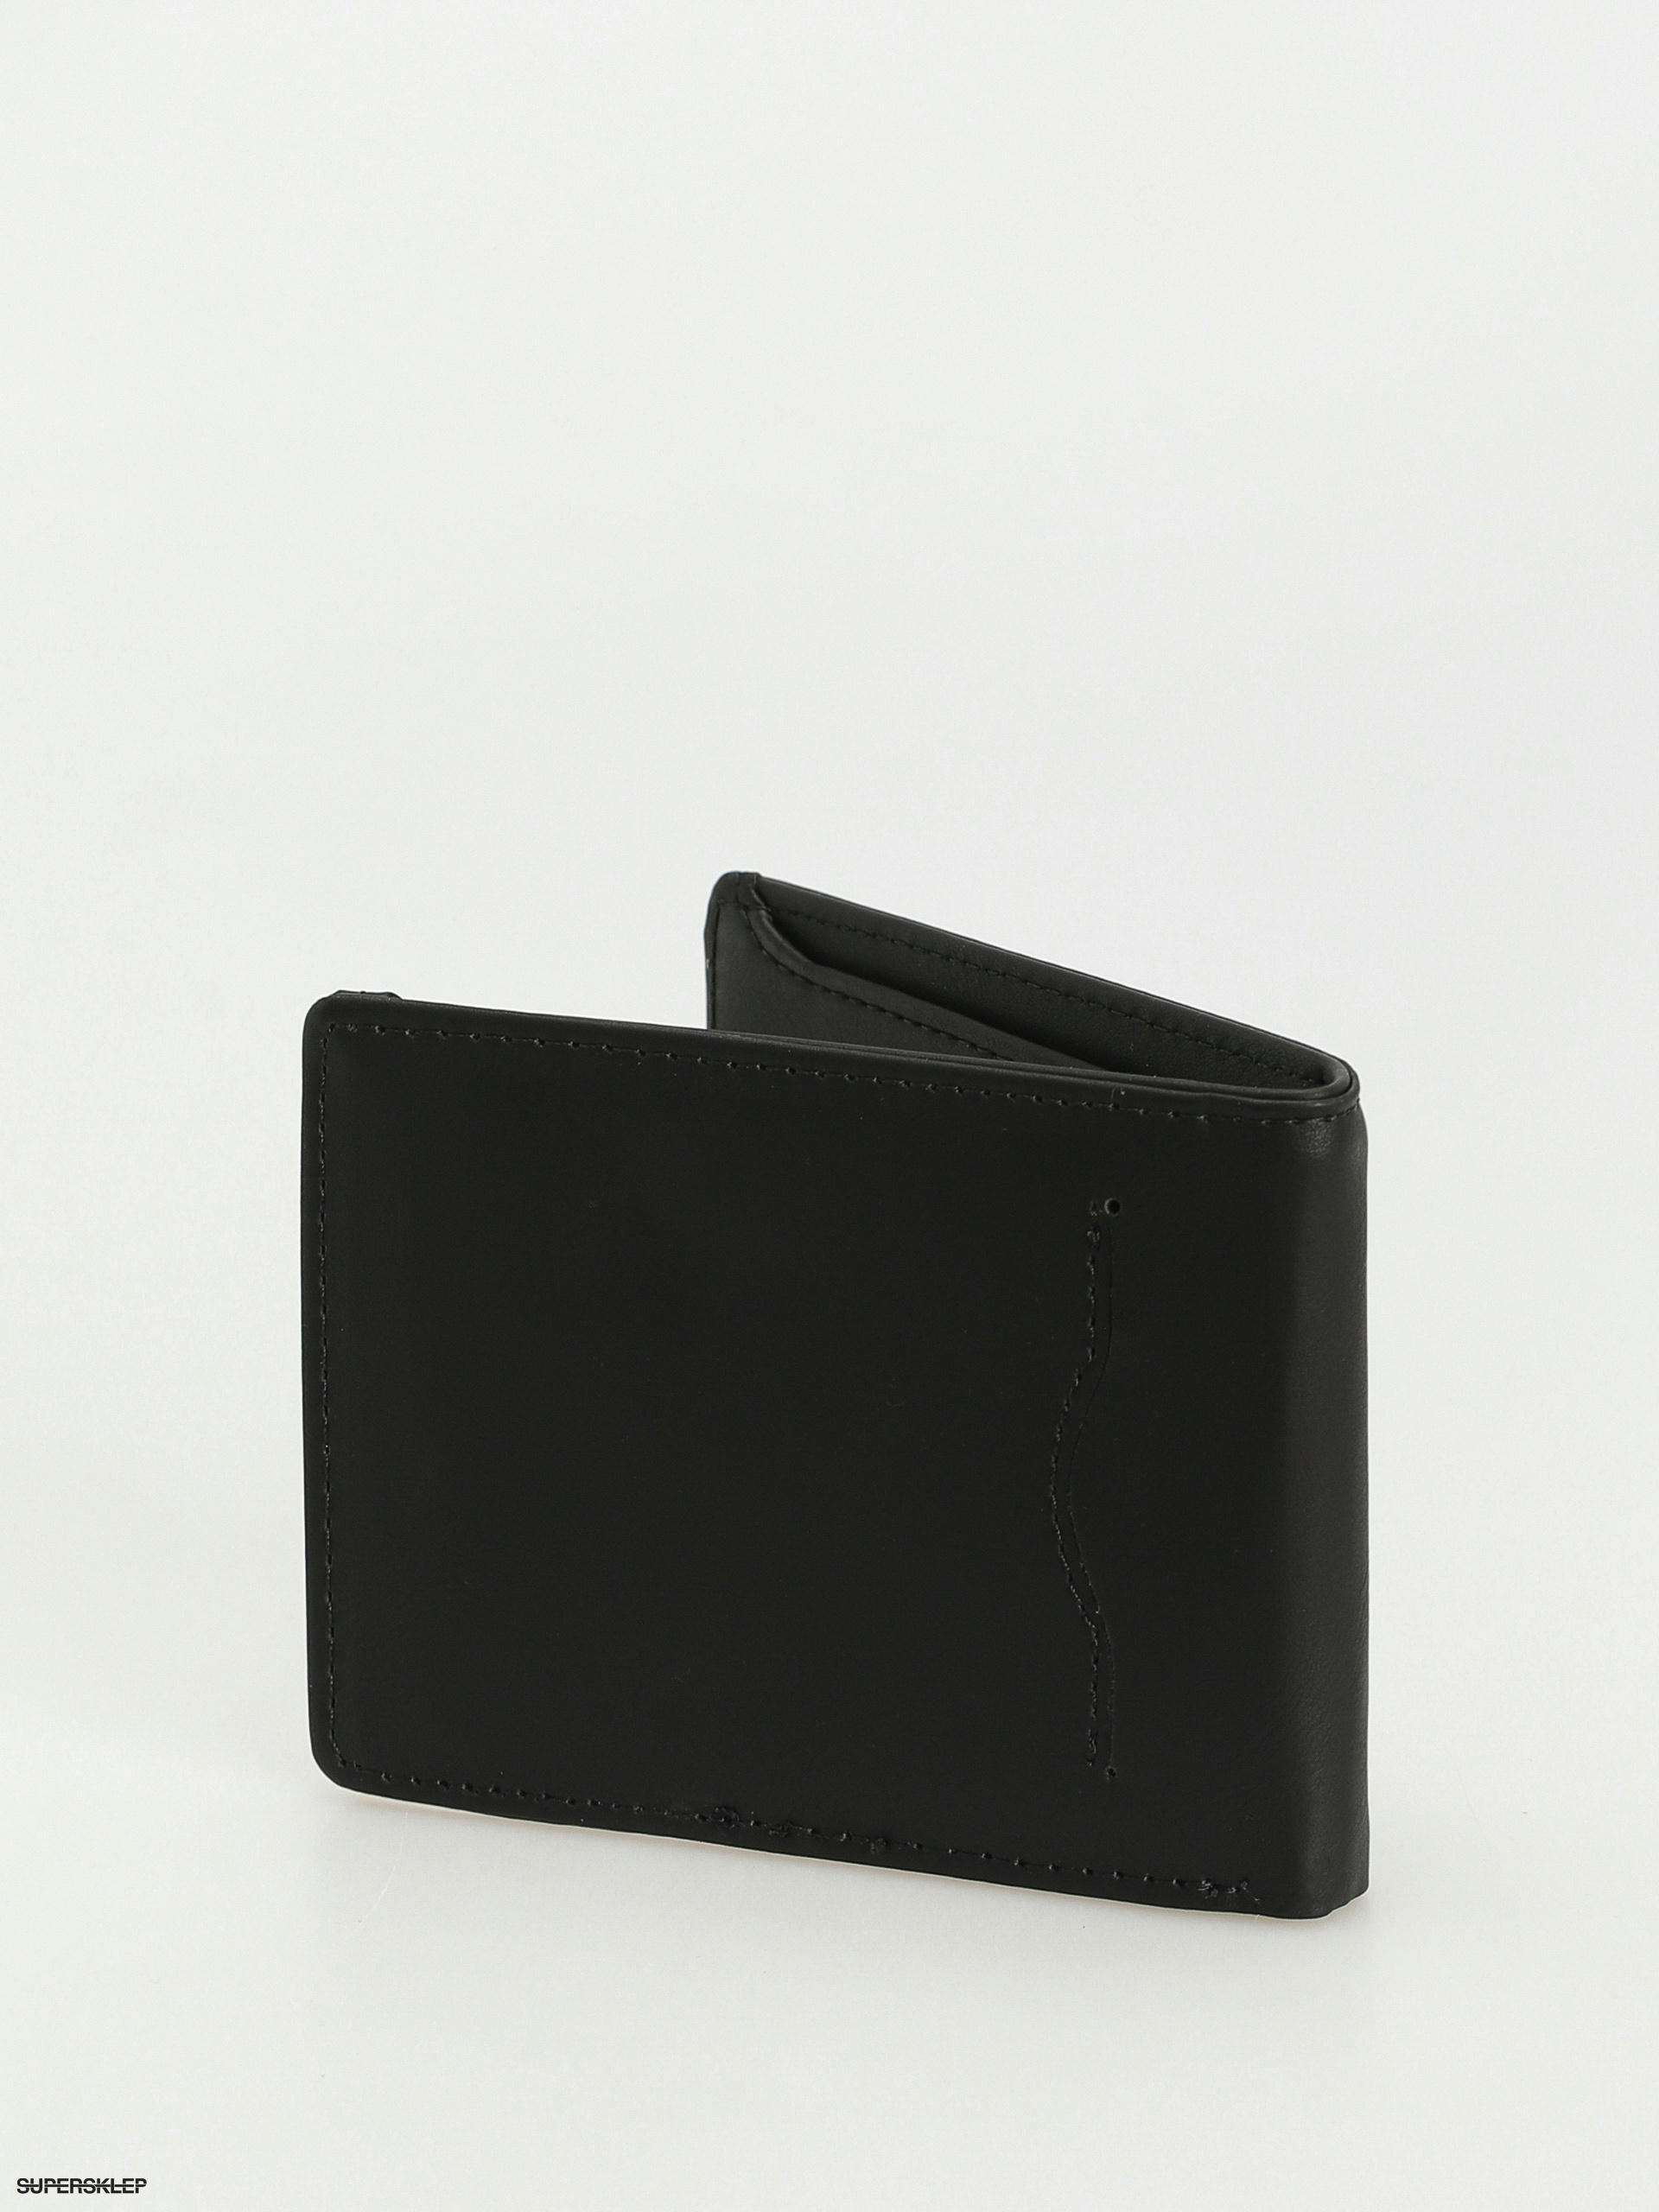 Quiksilver Men's Slim Rays Bi-Fold Wallet